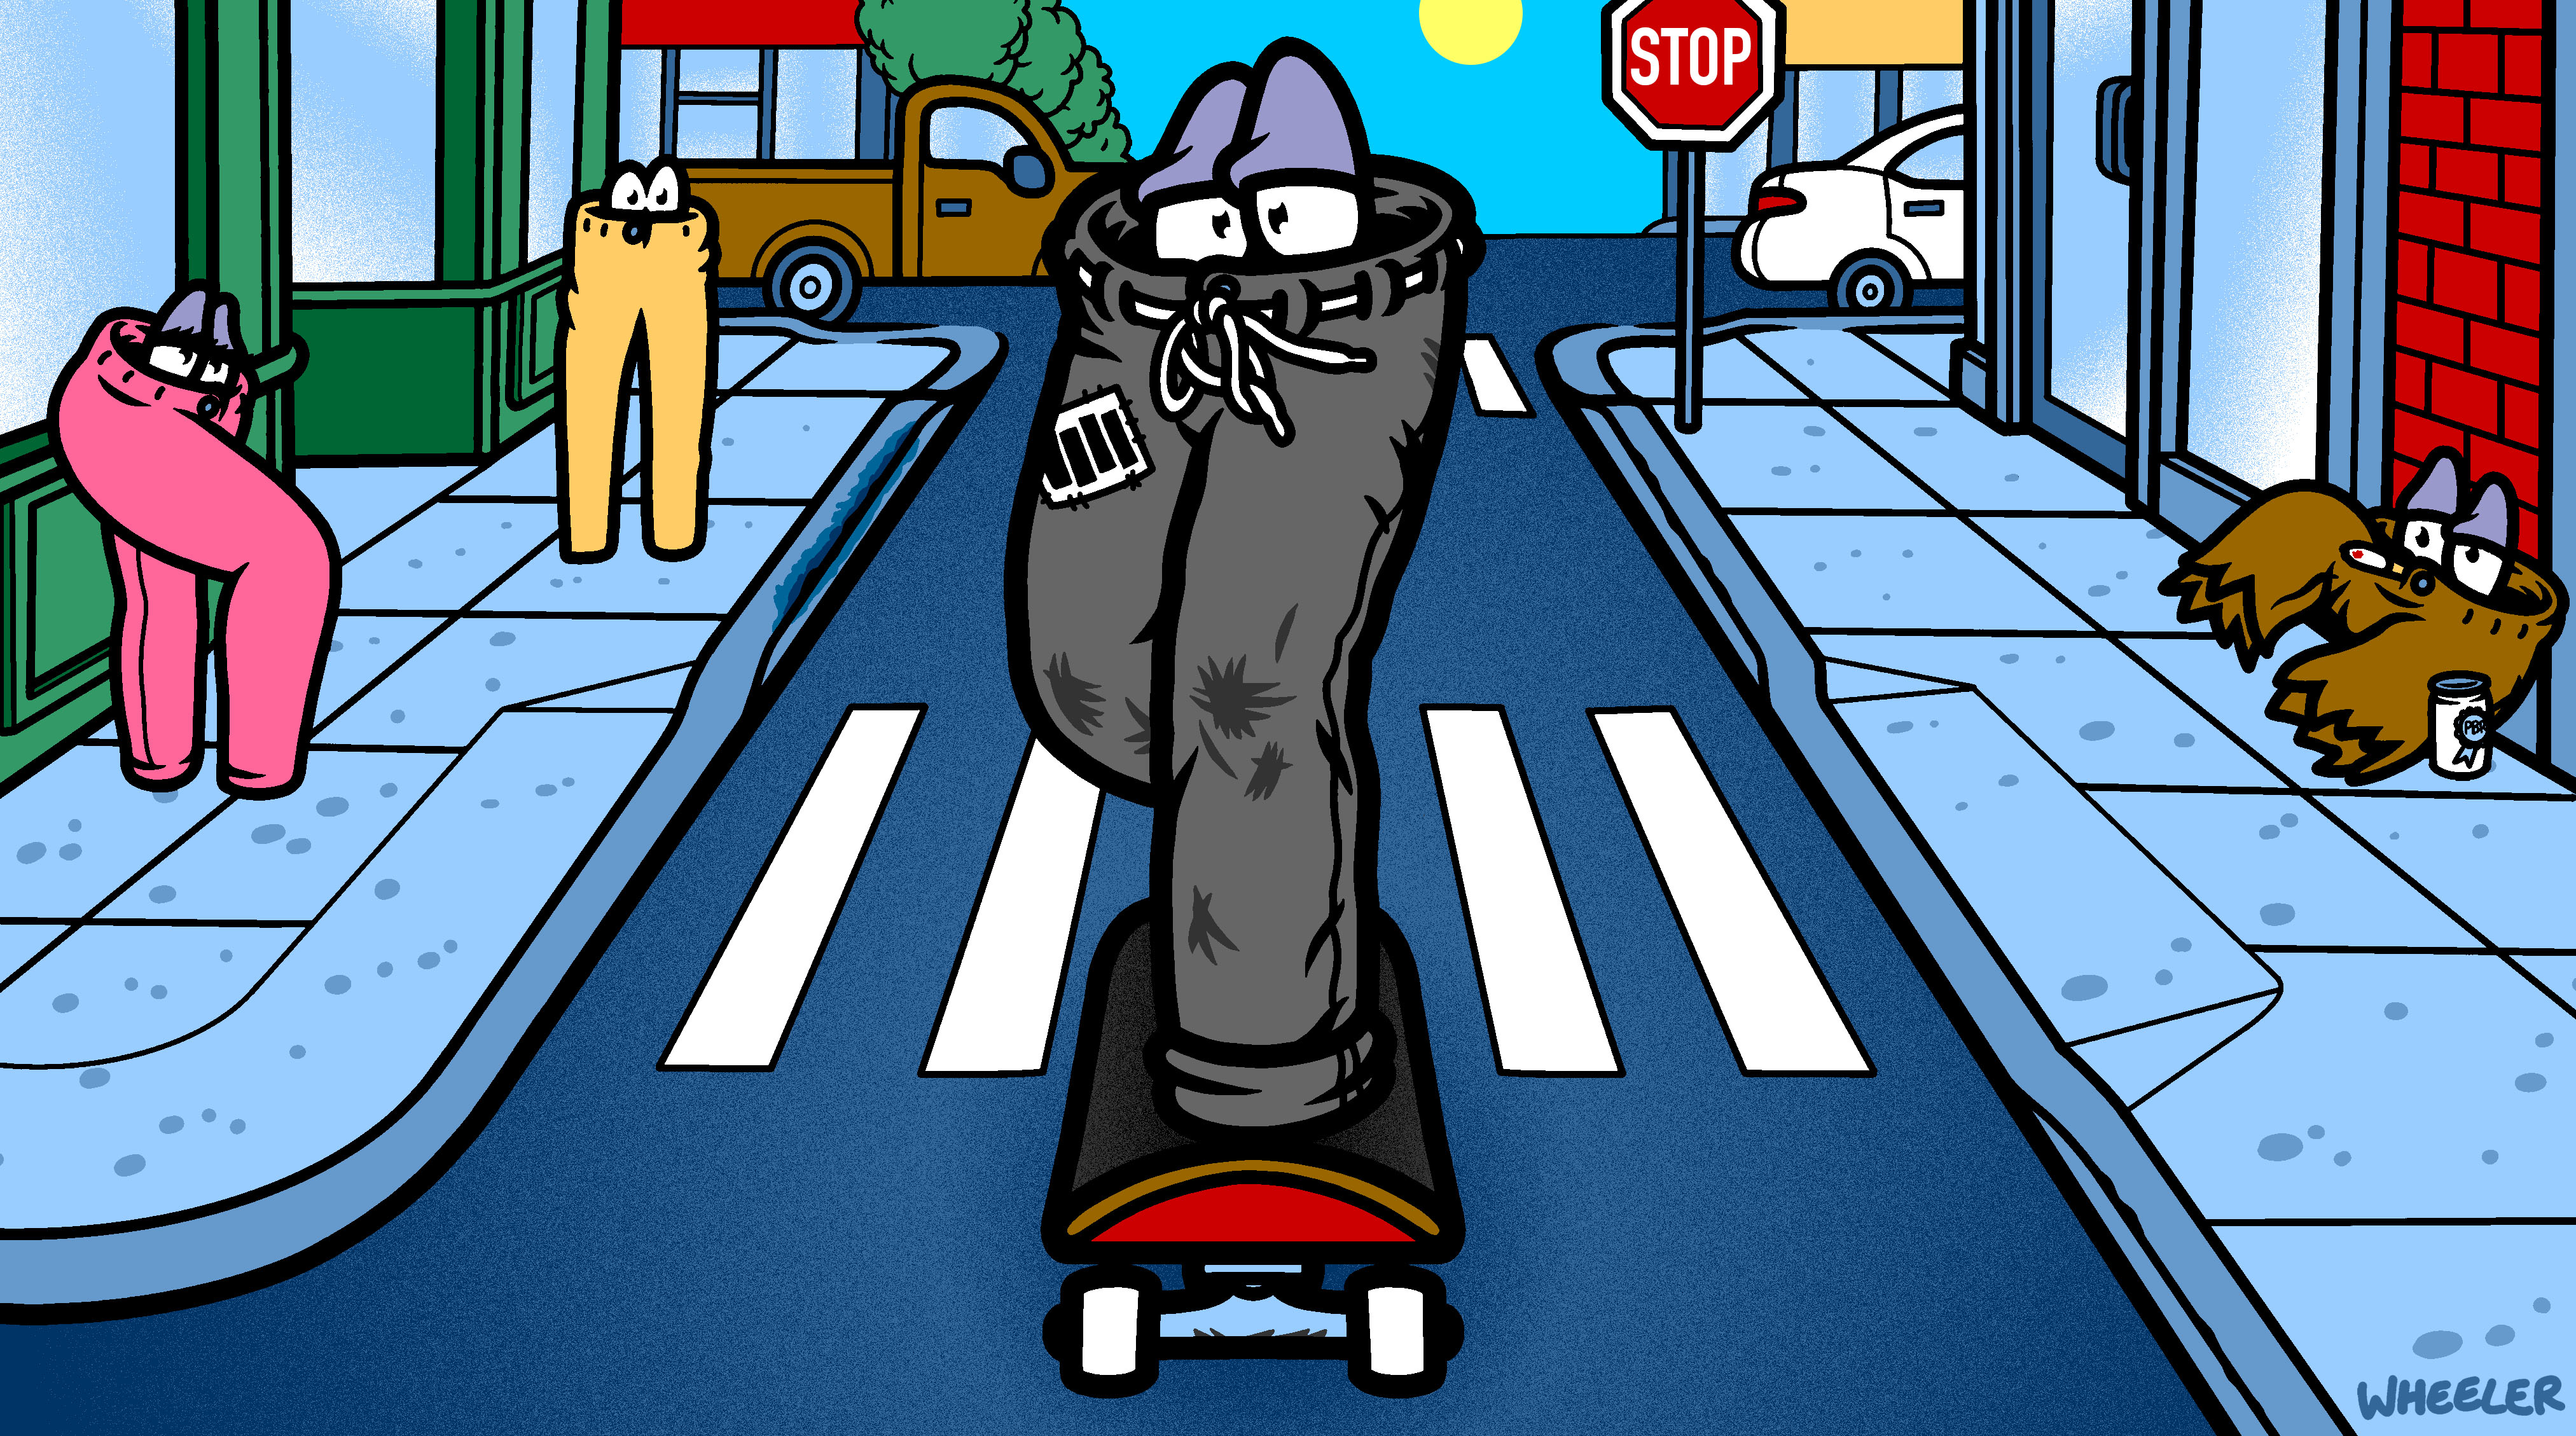 What is too baggy? 😳💀#fyp #baggyjeans #skate #skateboarding